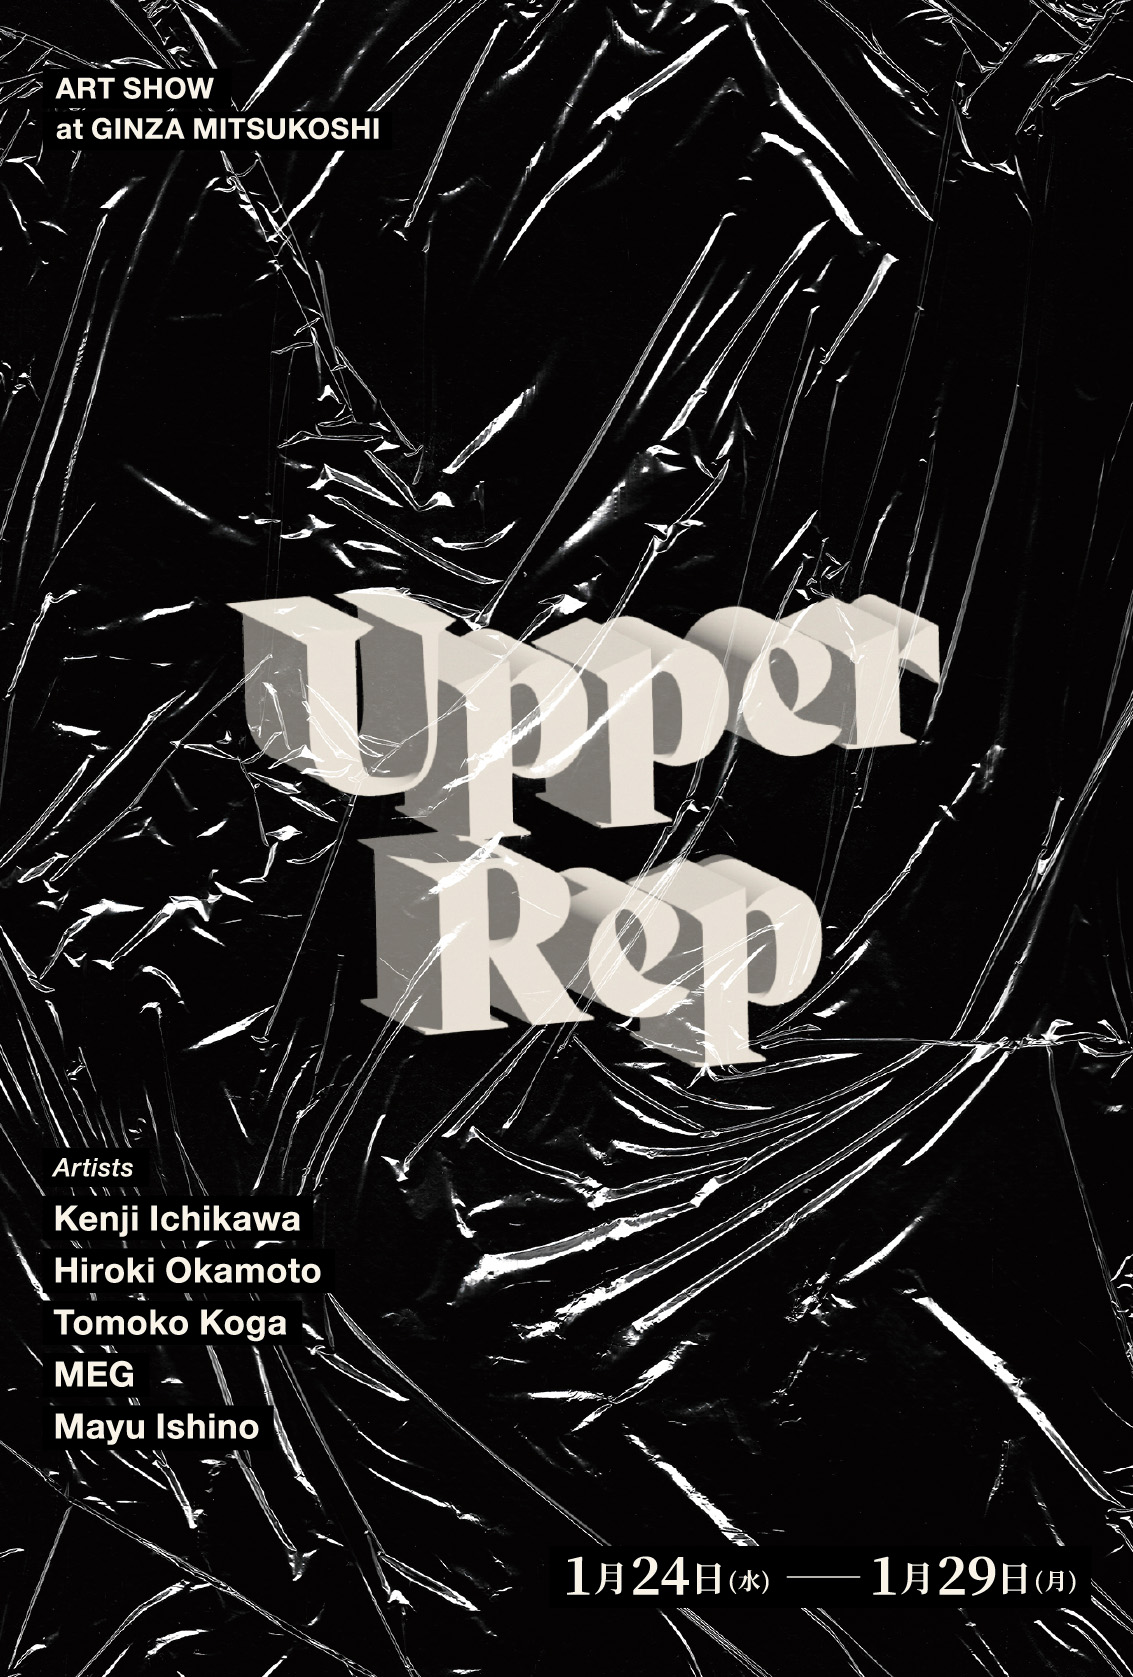 銀座三越にて開催するグループアートショー「Upper Rep」のポスター